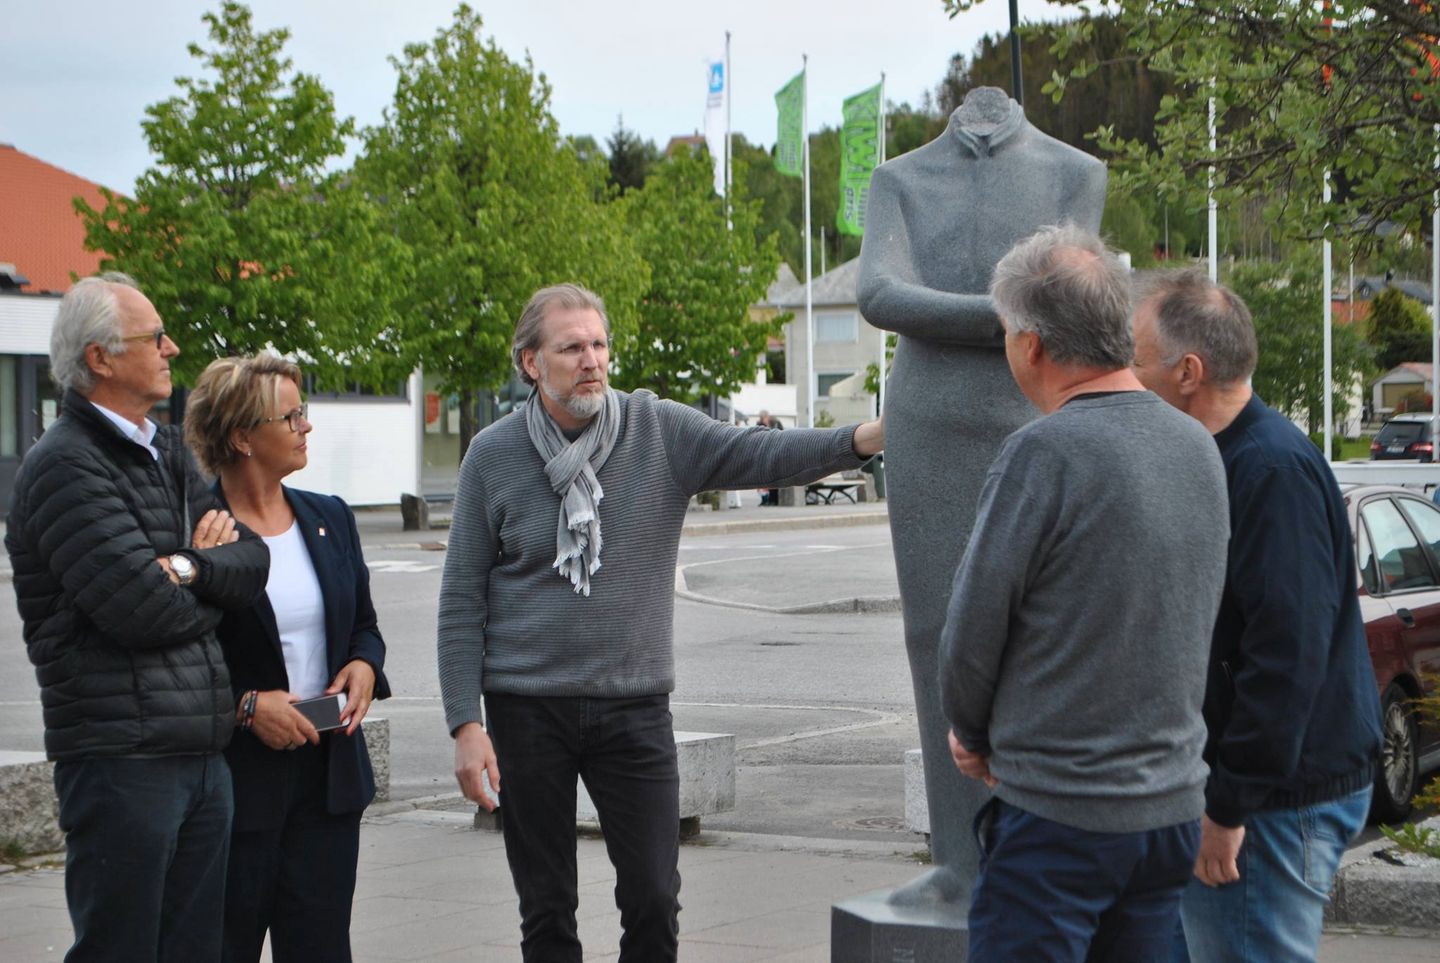 Kunstneren om statue-hærverk: - Her må de ha brukt slegge - Bergens Tidende